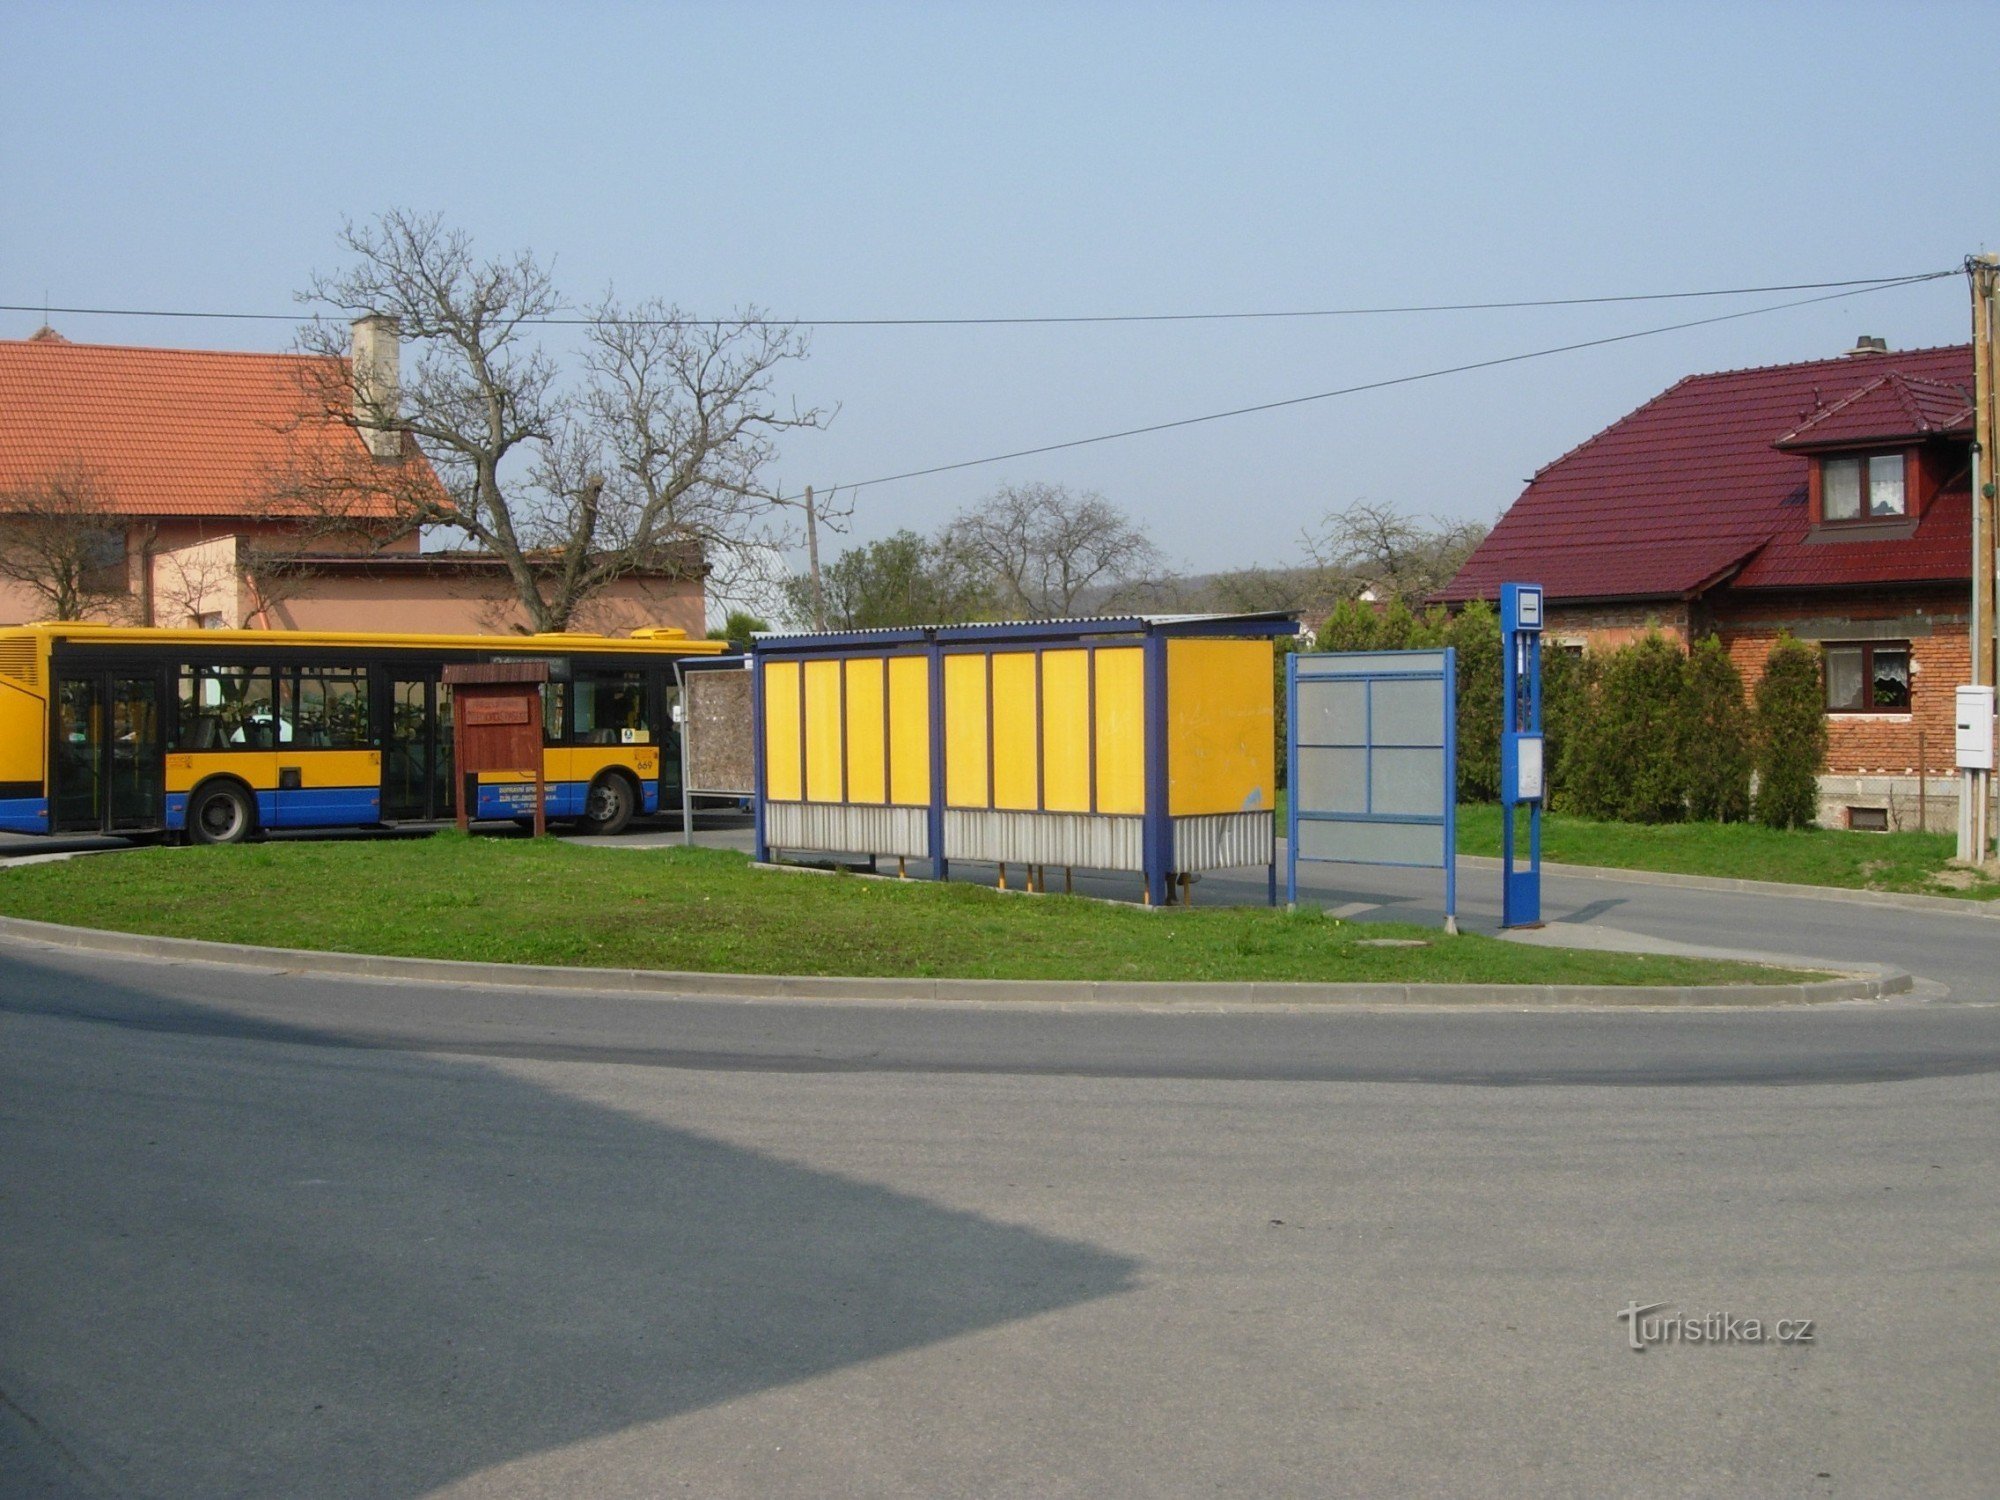 Jaroslavice 的收费公路，路线的起点